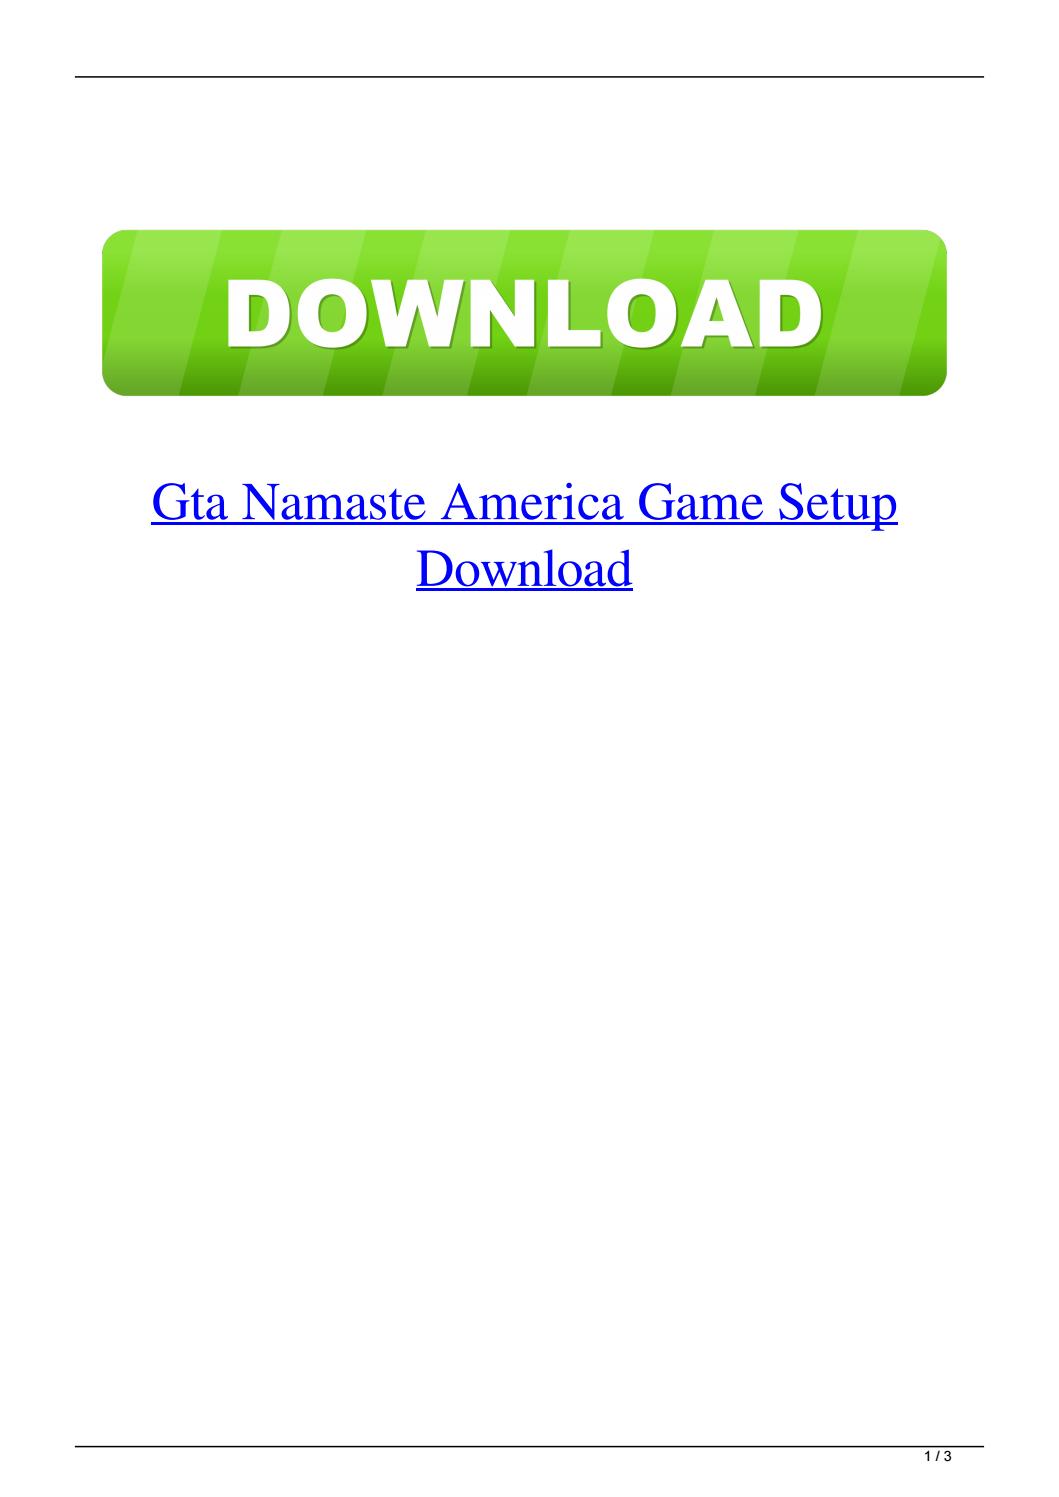 namaste america game setup download